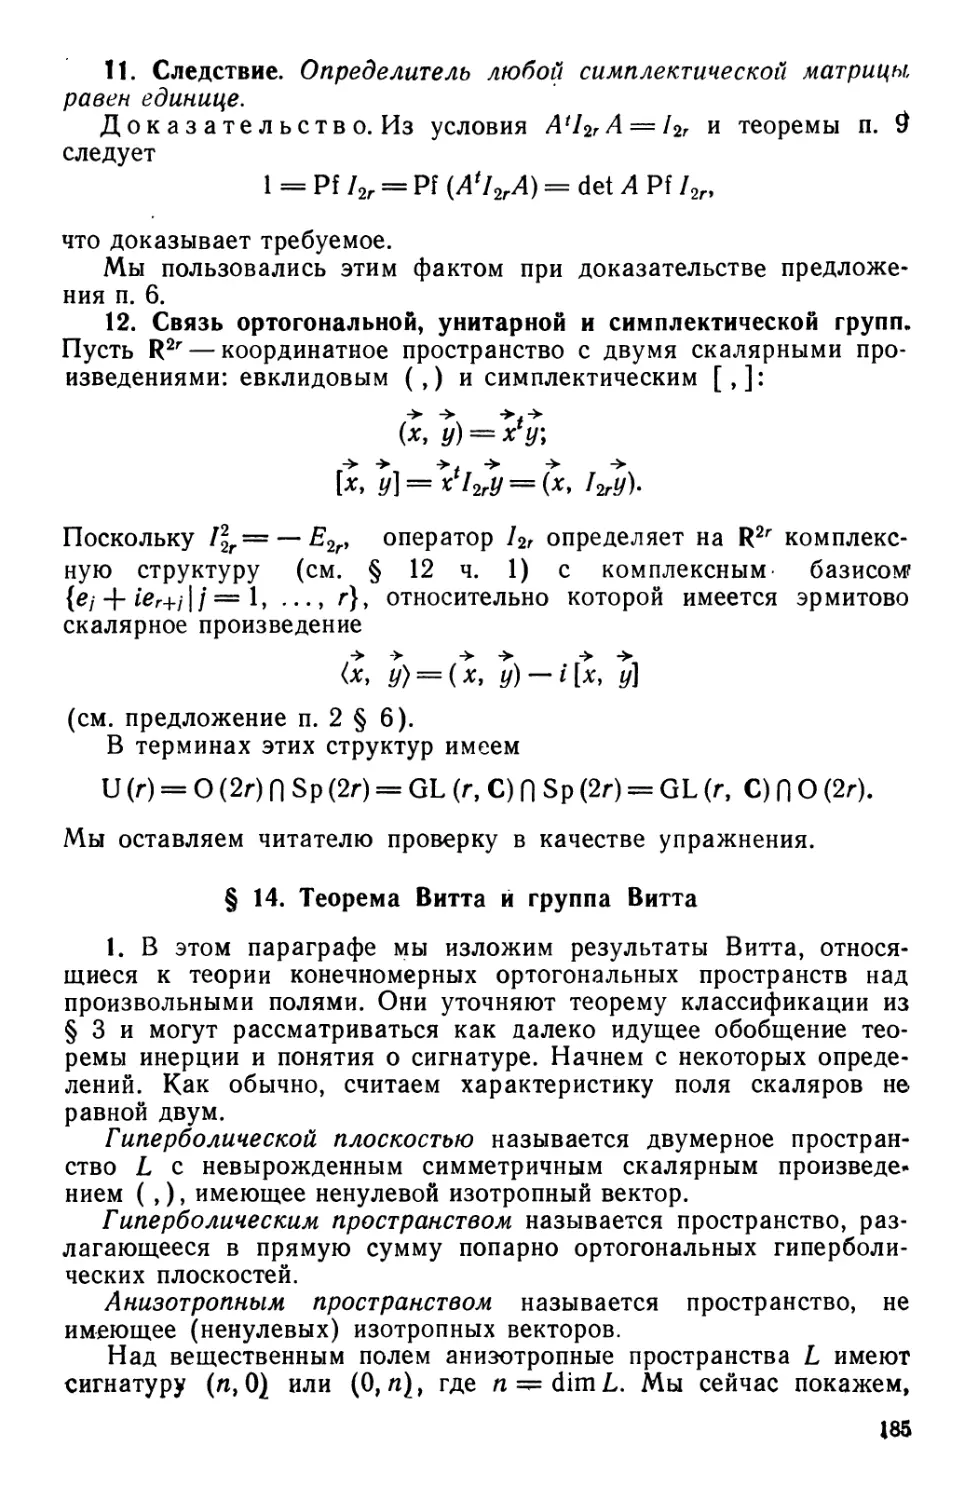 § 14. Теорема Витта и группа Витта